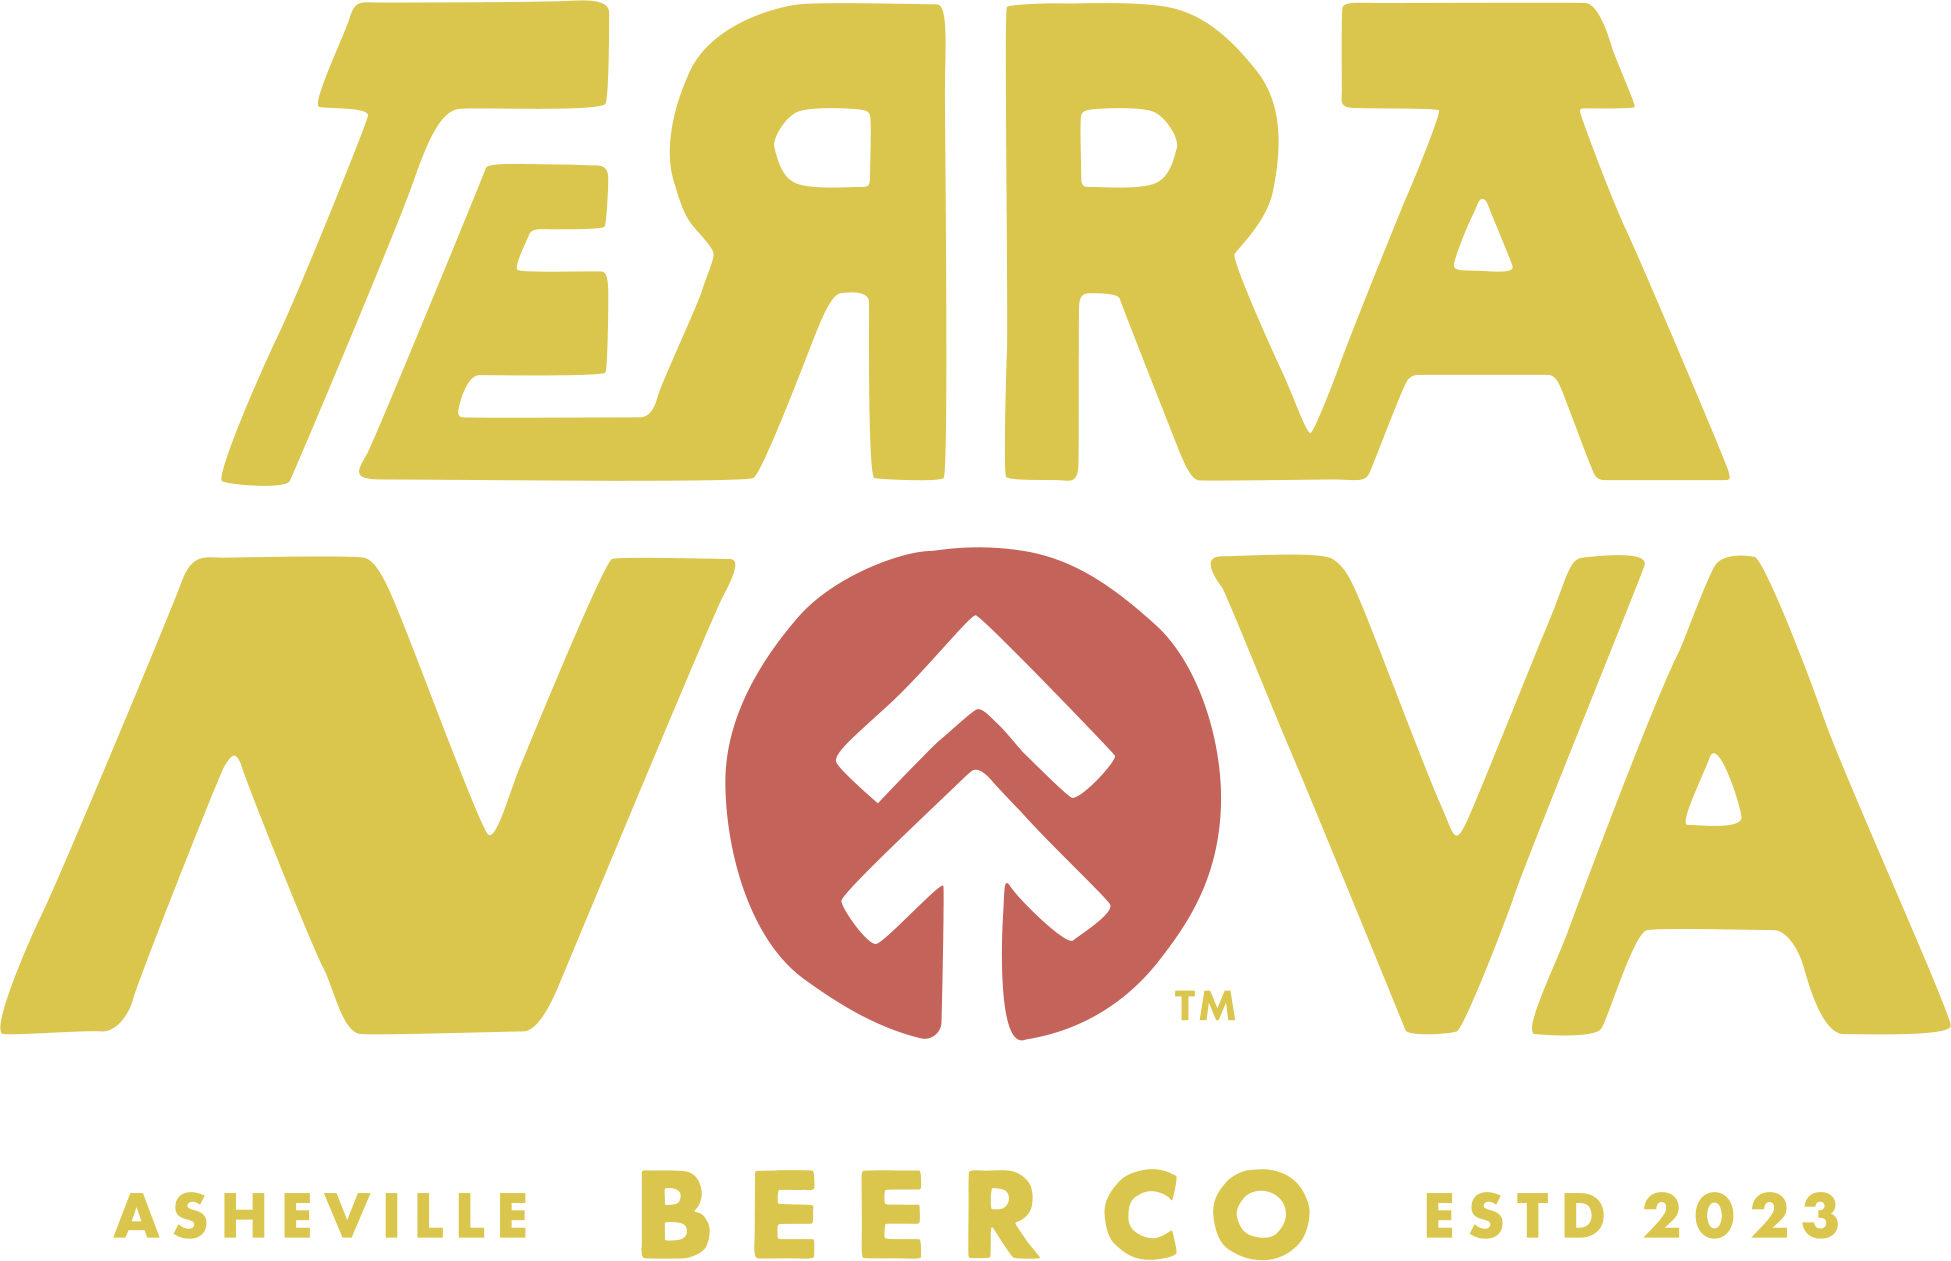 Terra Nova Brewing